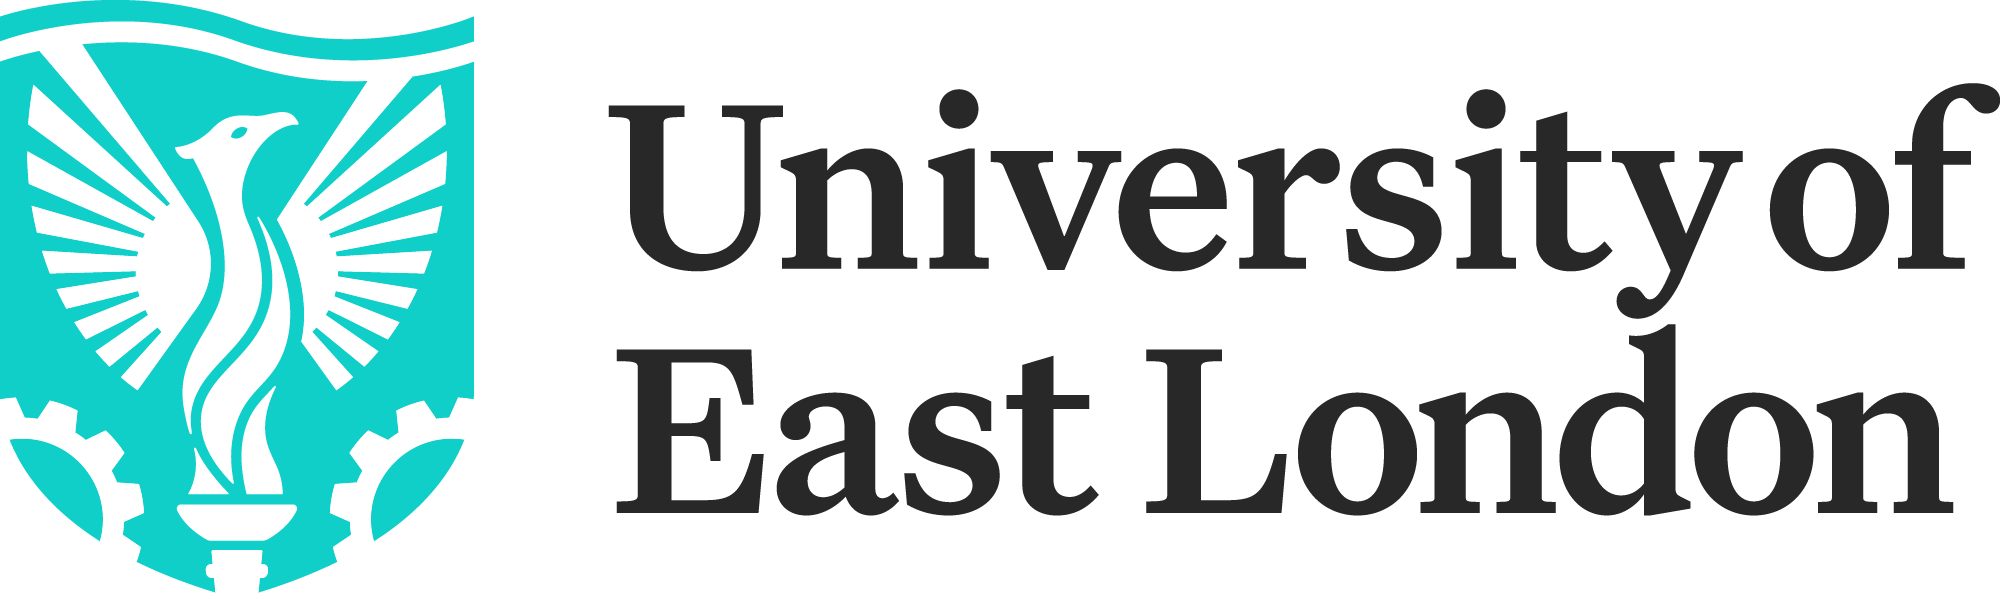 Image of University of East London logo